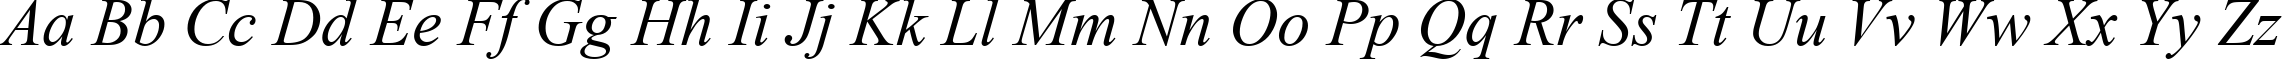 Пример написания английского алфавита шрифтом Times New Roman CE Italic